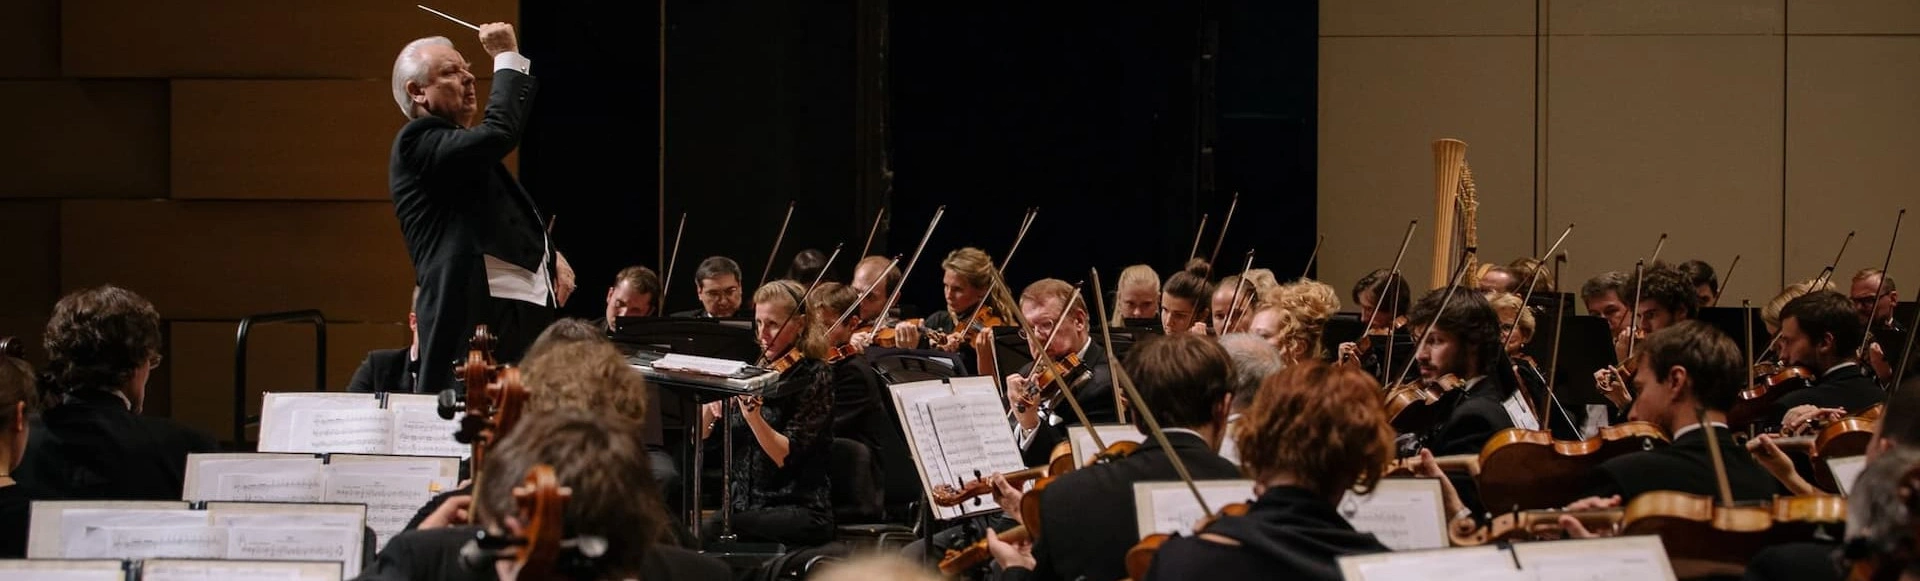 Академический симфонический оркестр Московской филармонии, Юрий Симонов, Николай Луганский